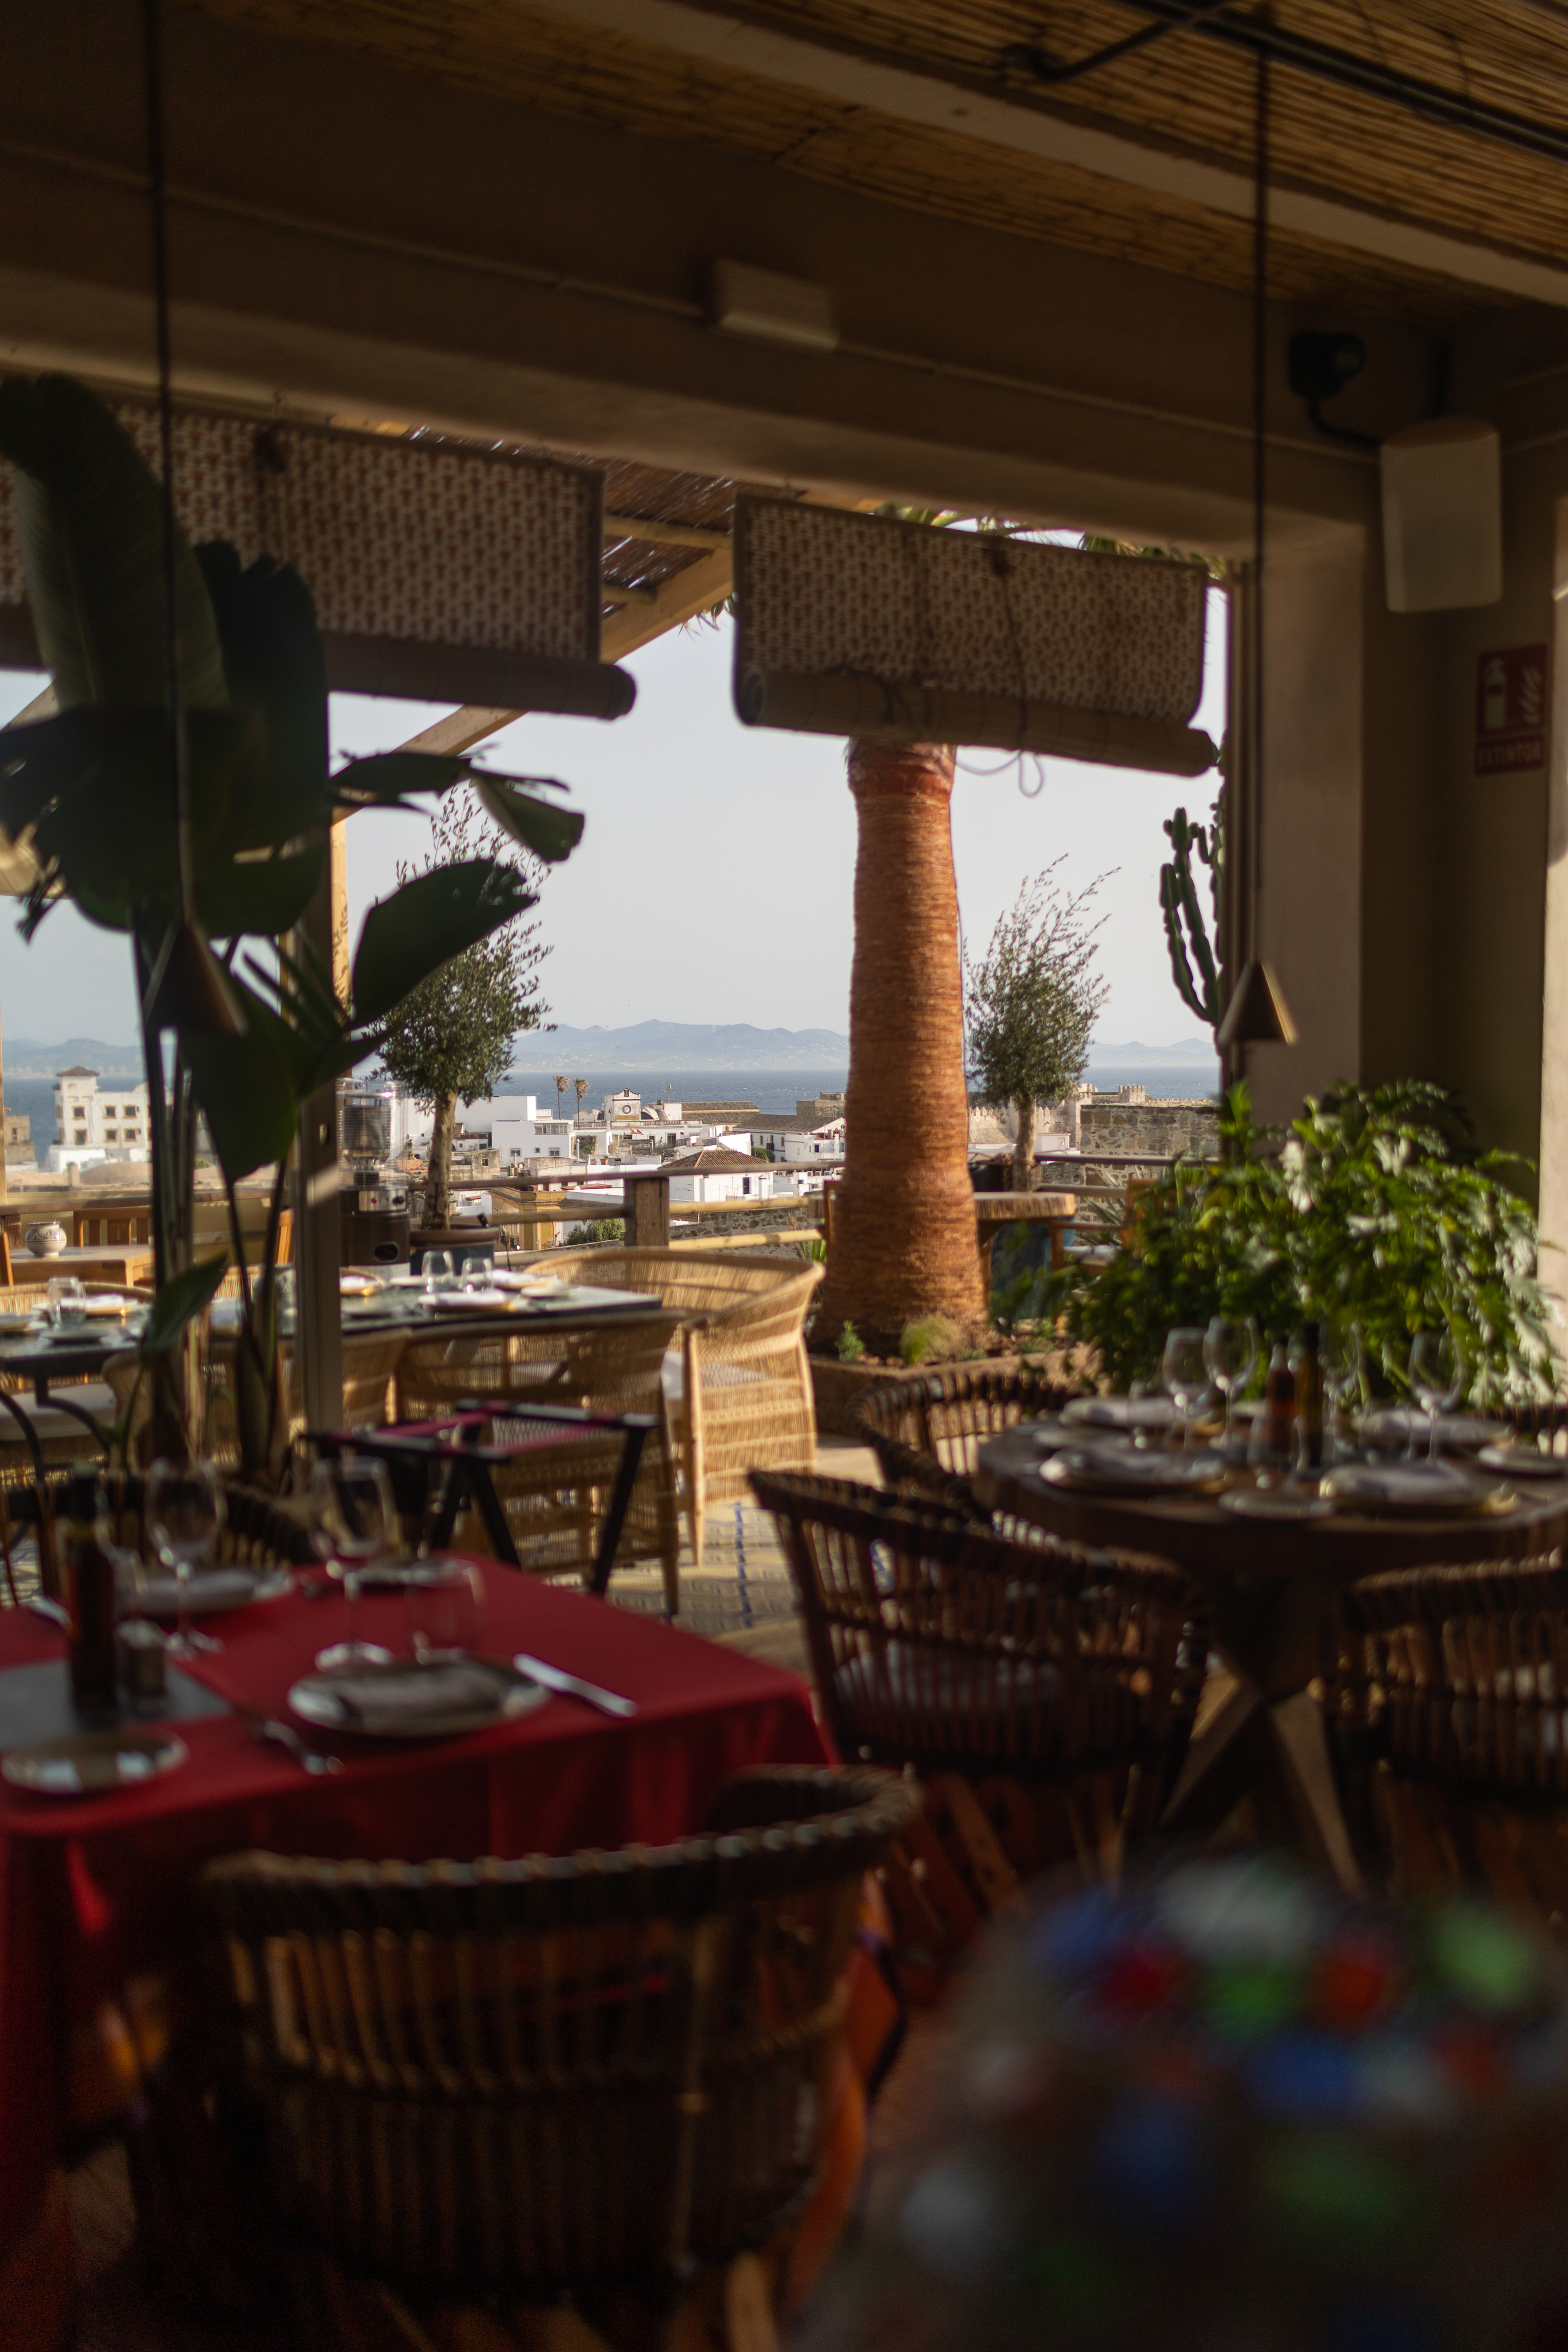 El restaurante Trocadero Tarifa ofrece unas espectaculares vistas de la ciudad de Tarifa y de África.